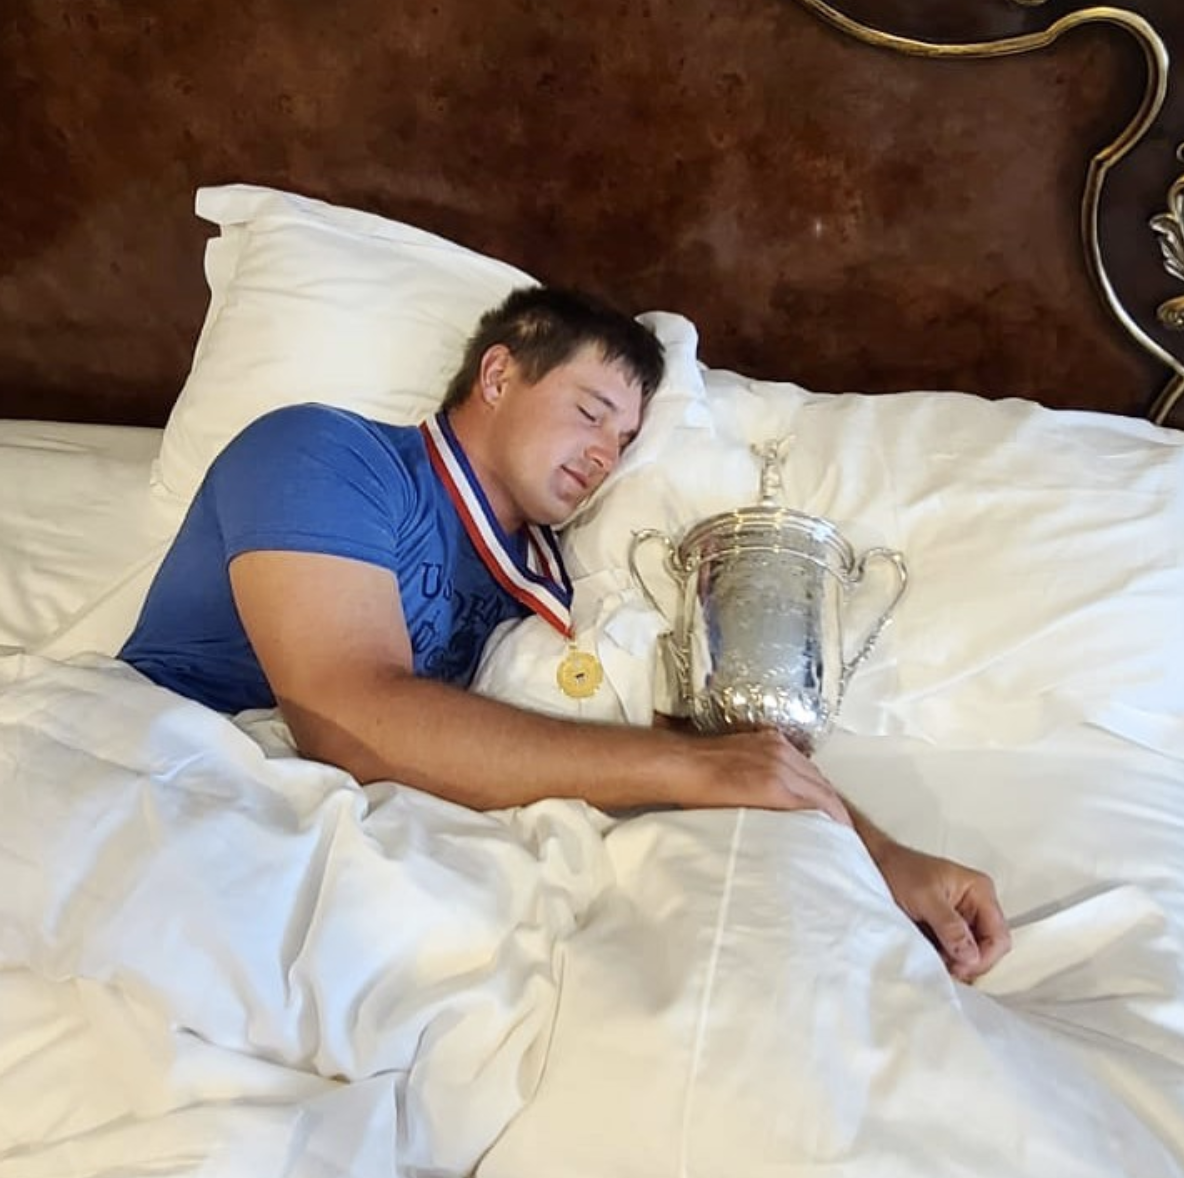 Iubitul doarme cu trofeul de la US Open, ea se tolănește cu porcul. Imagini incredibile!